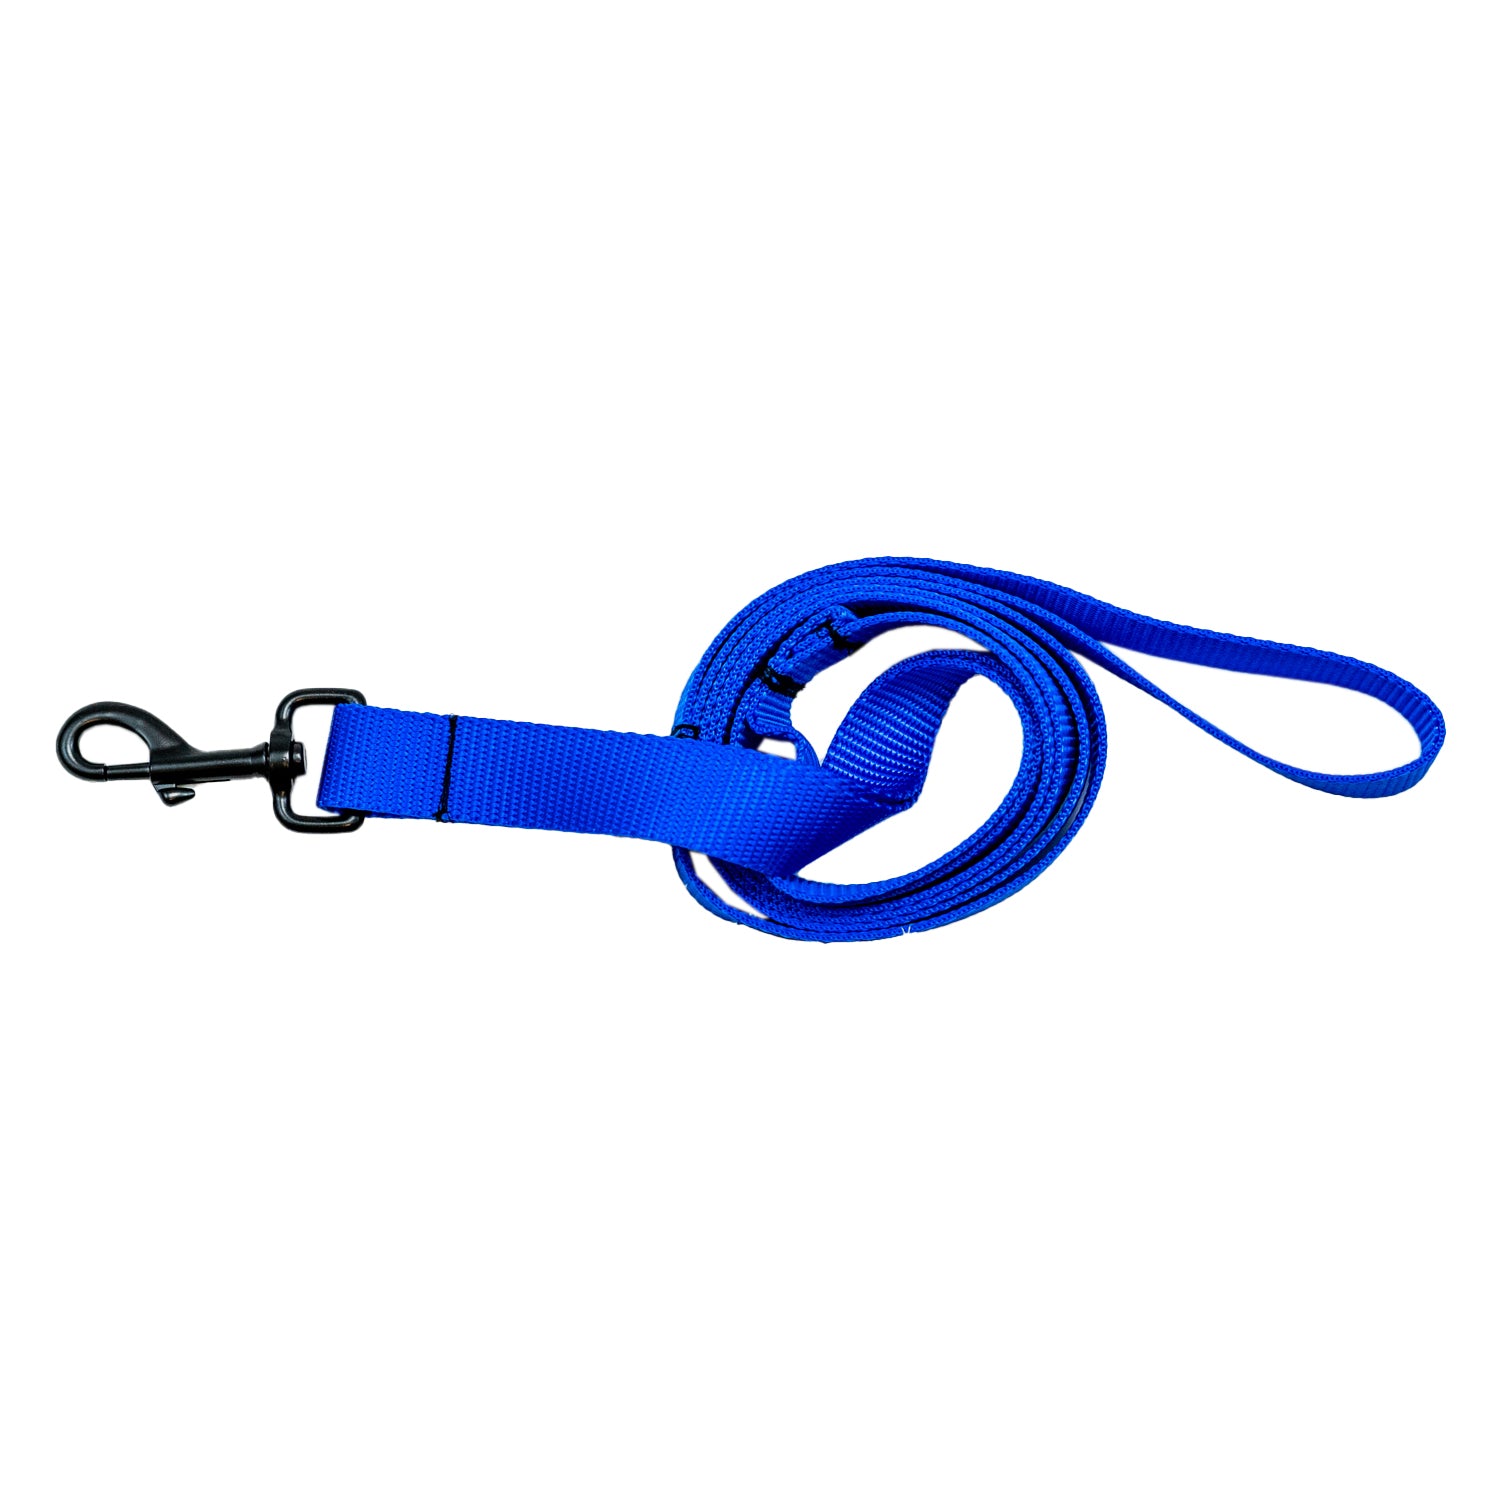 Bright Royal Blue Dog Leash